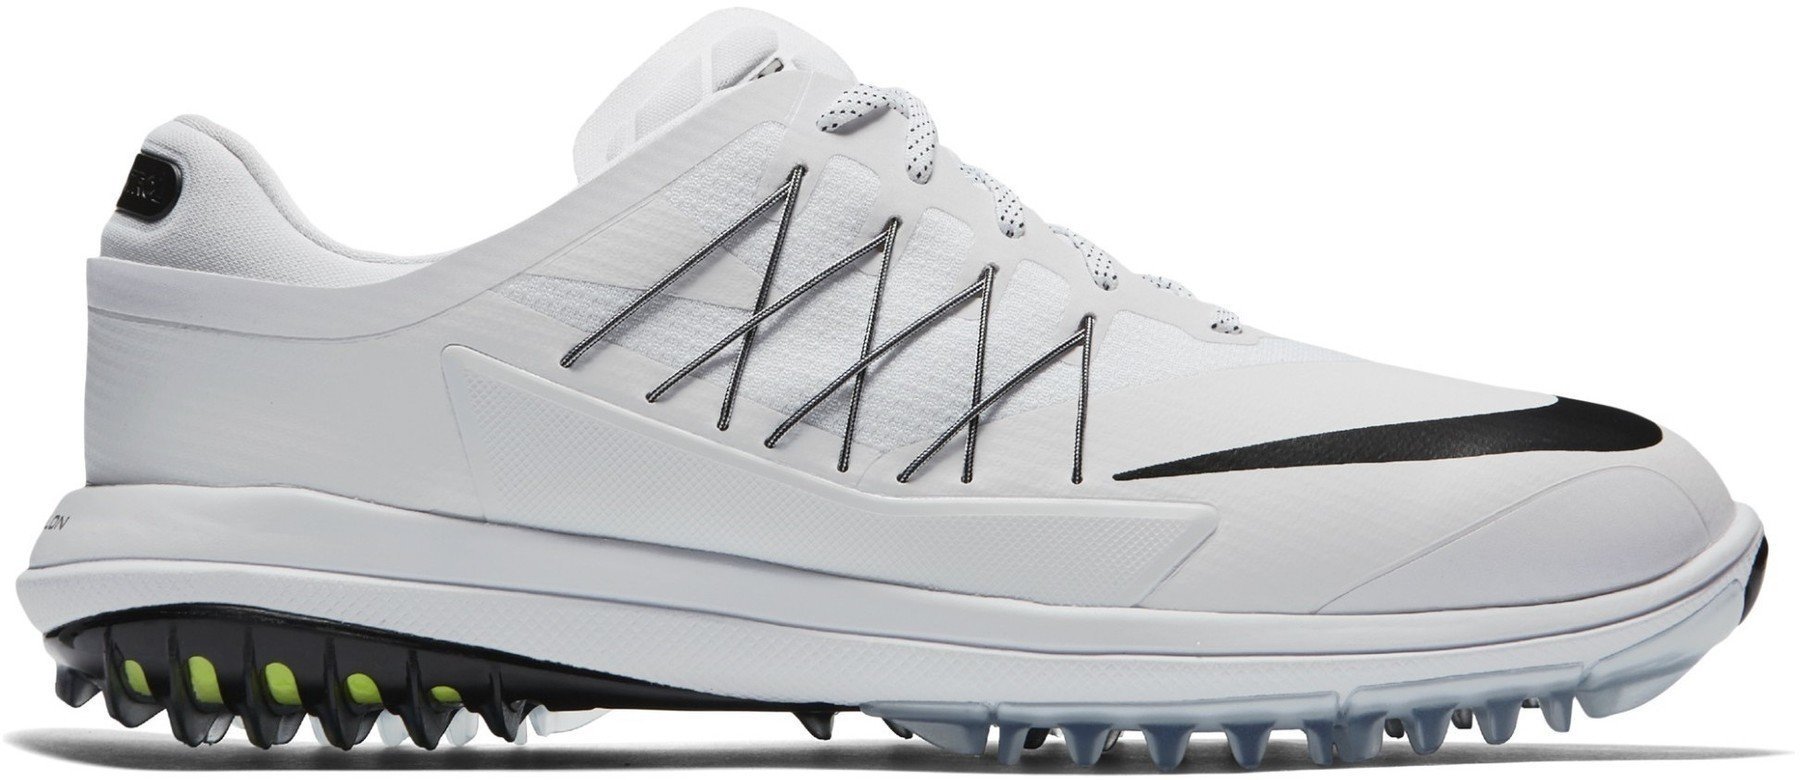 Heren golfschoenen Nike Lunar Control Vapor Mens Golf Shoes White US 9